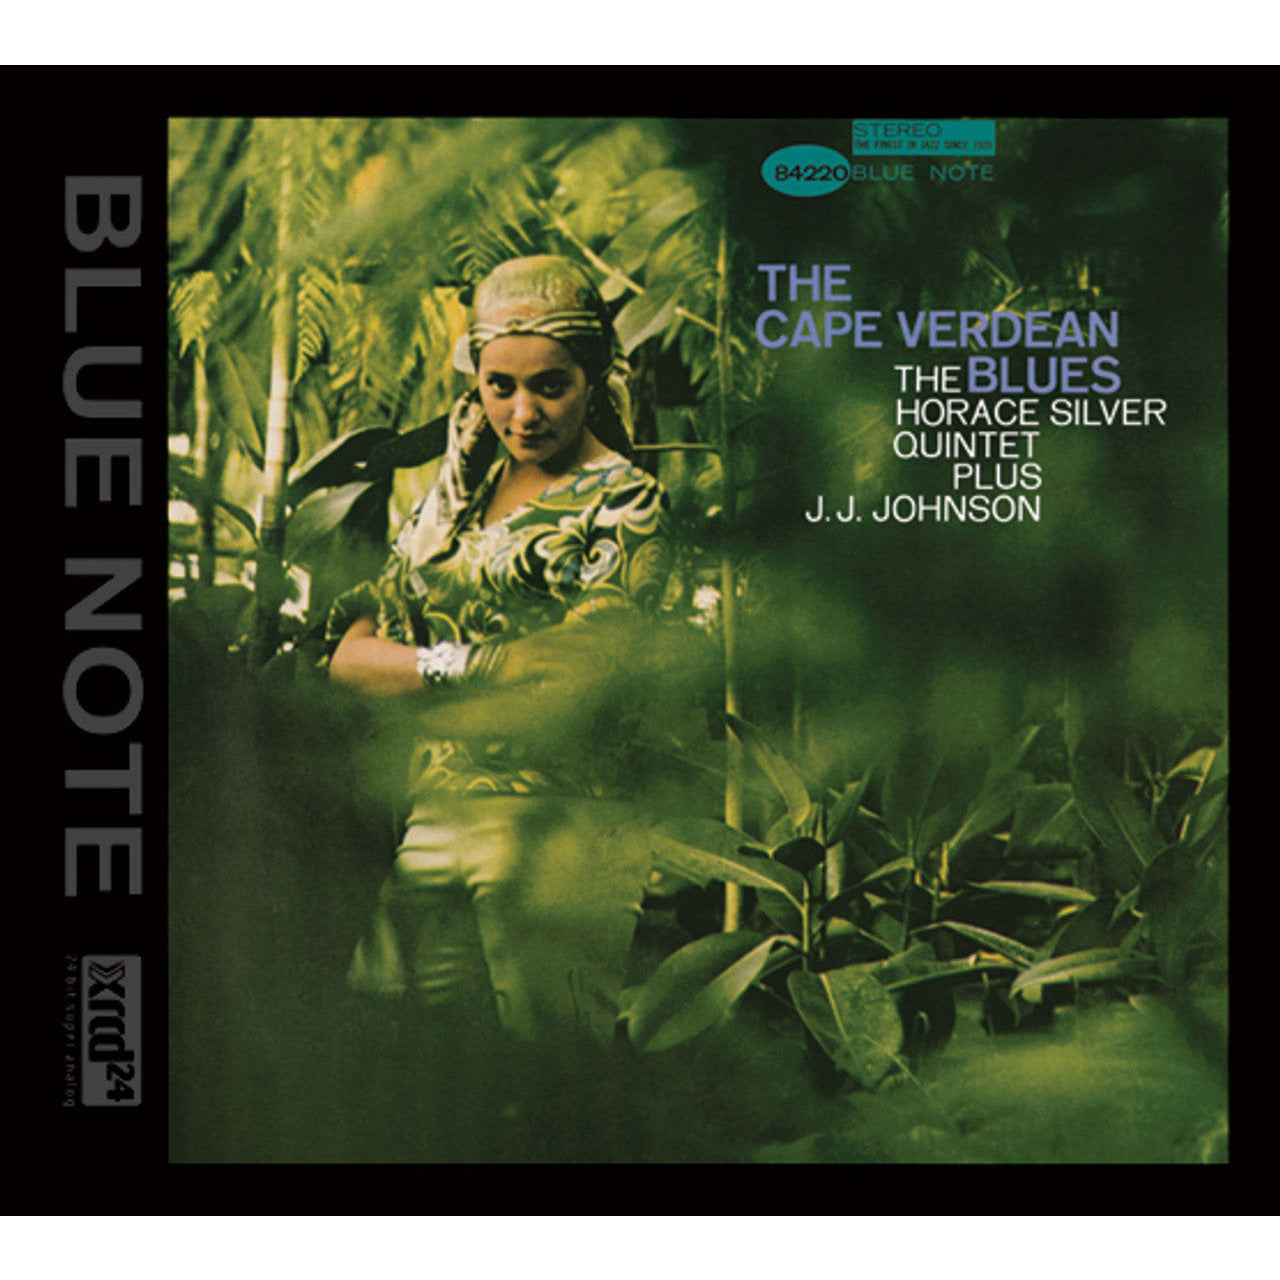 The Horace Silver Quintet - The Cape Verdean Blues - XRCD24 CD